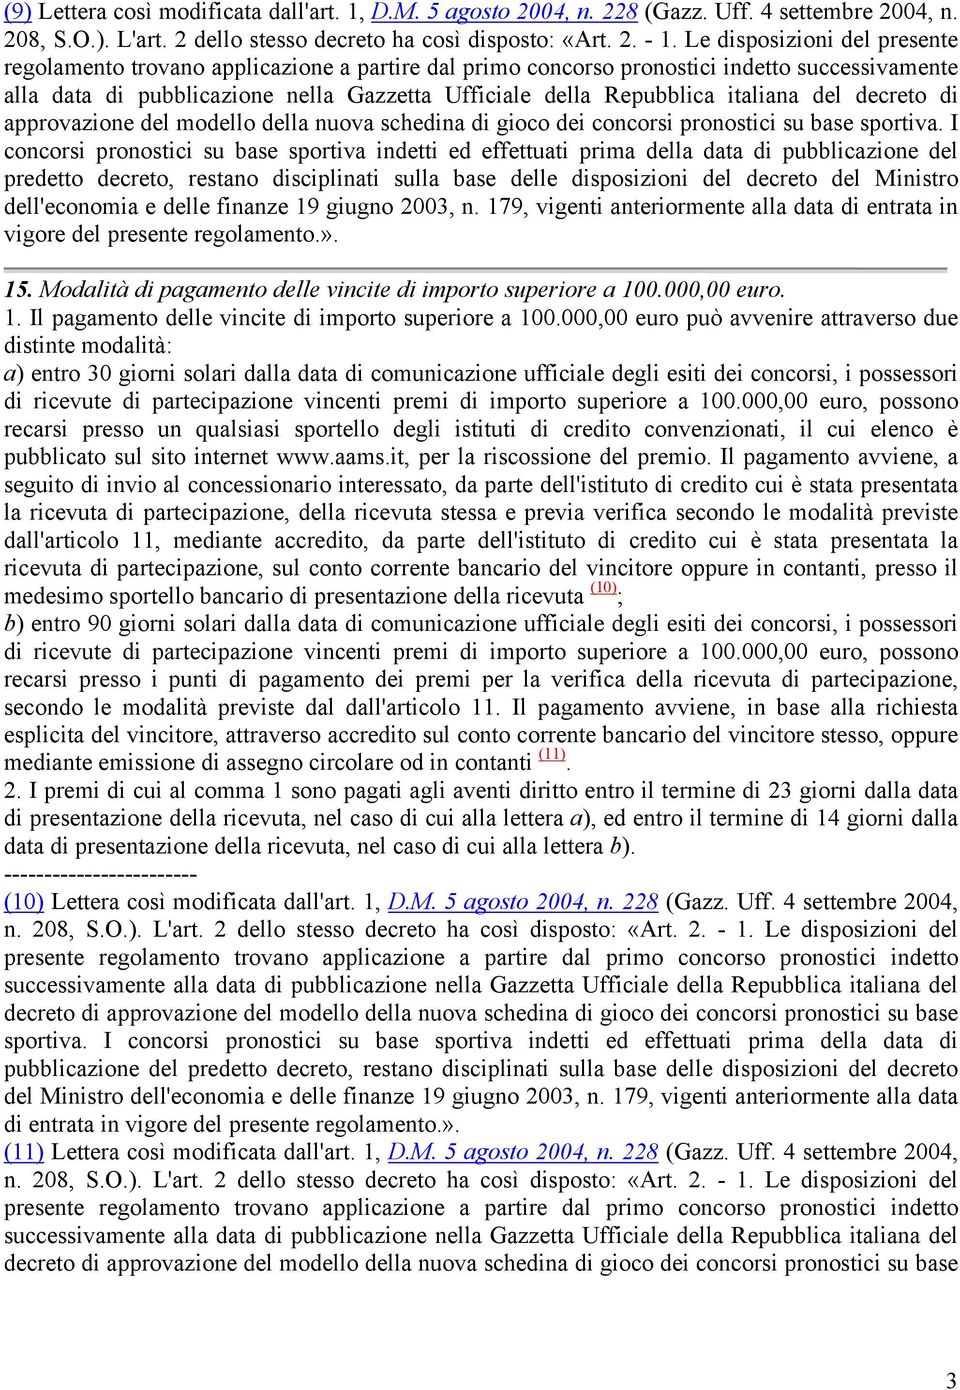 italiana del decreto di approvazione del modello della nuova schedina di gioco dei concorsi pronostici su base sportiva.